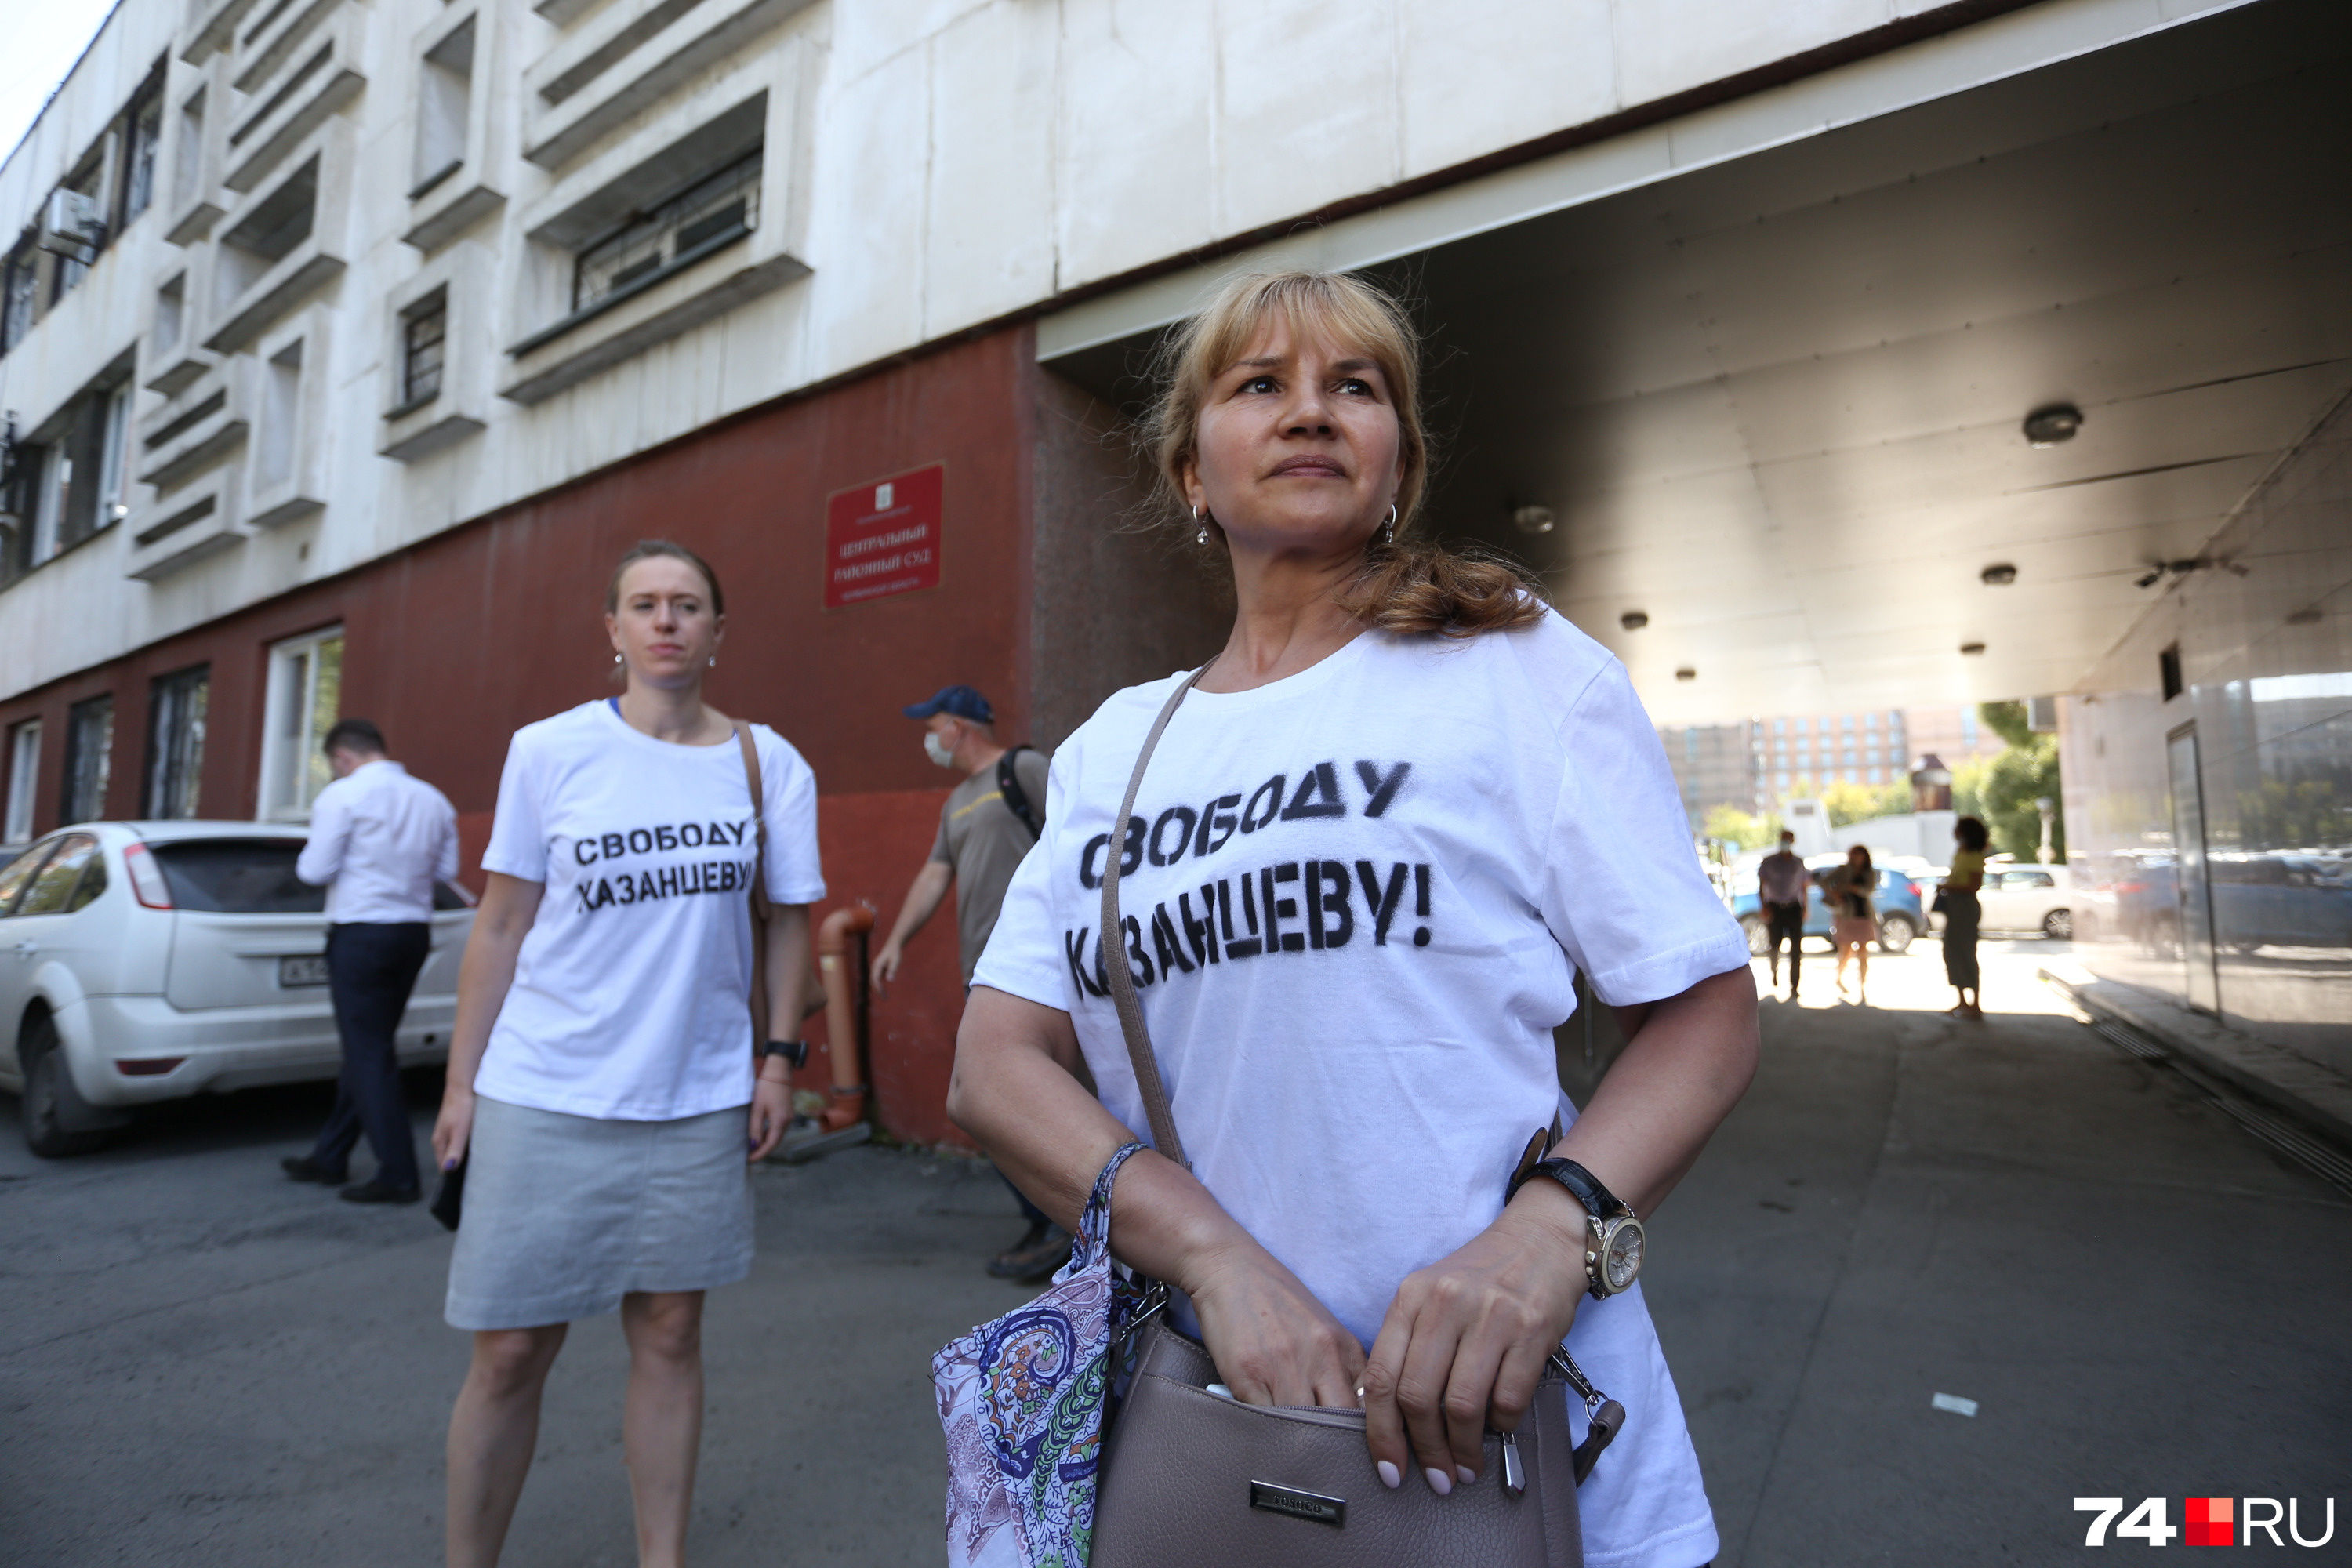 Поддержать юриста в суд пришли десятки активистов в футболках с надписью «Свободу Казанцеву!»